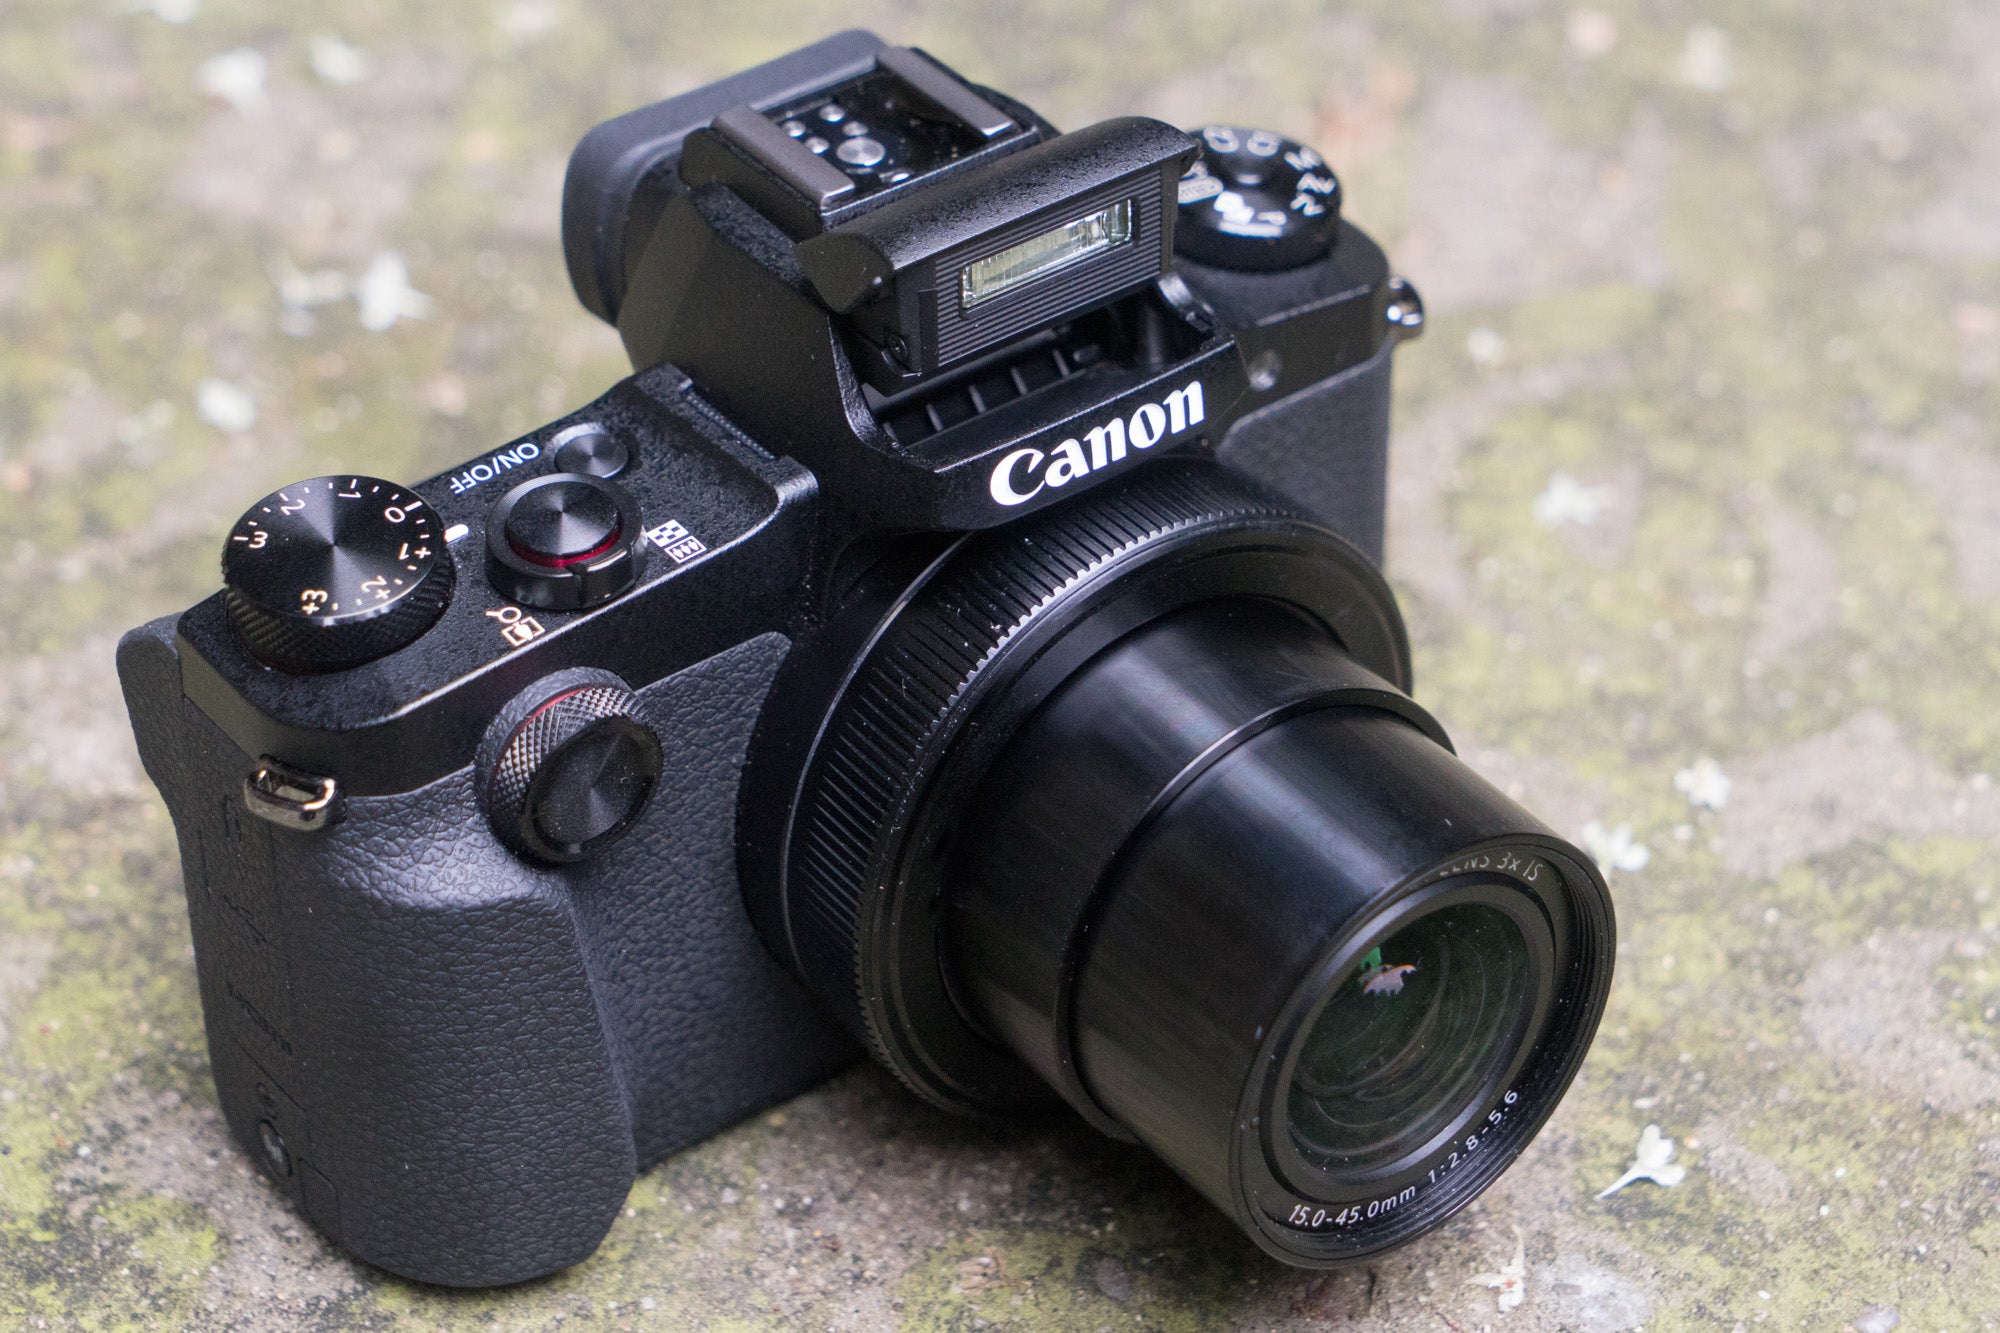 Schelden bende Verlengen Canon G1X Mark III Review | Trusted Reviews